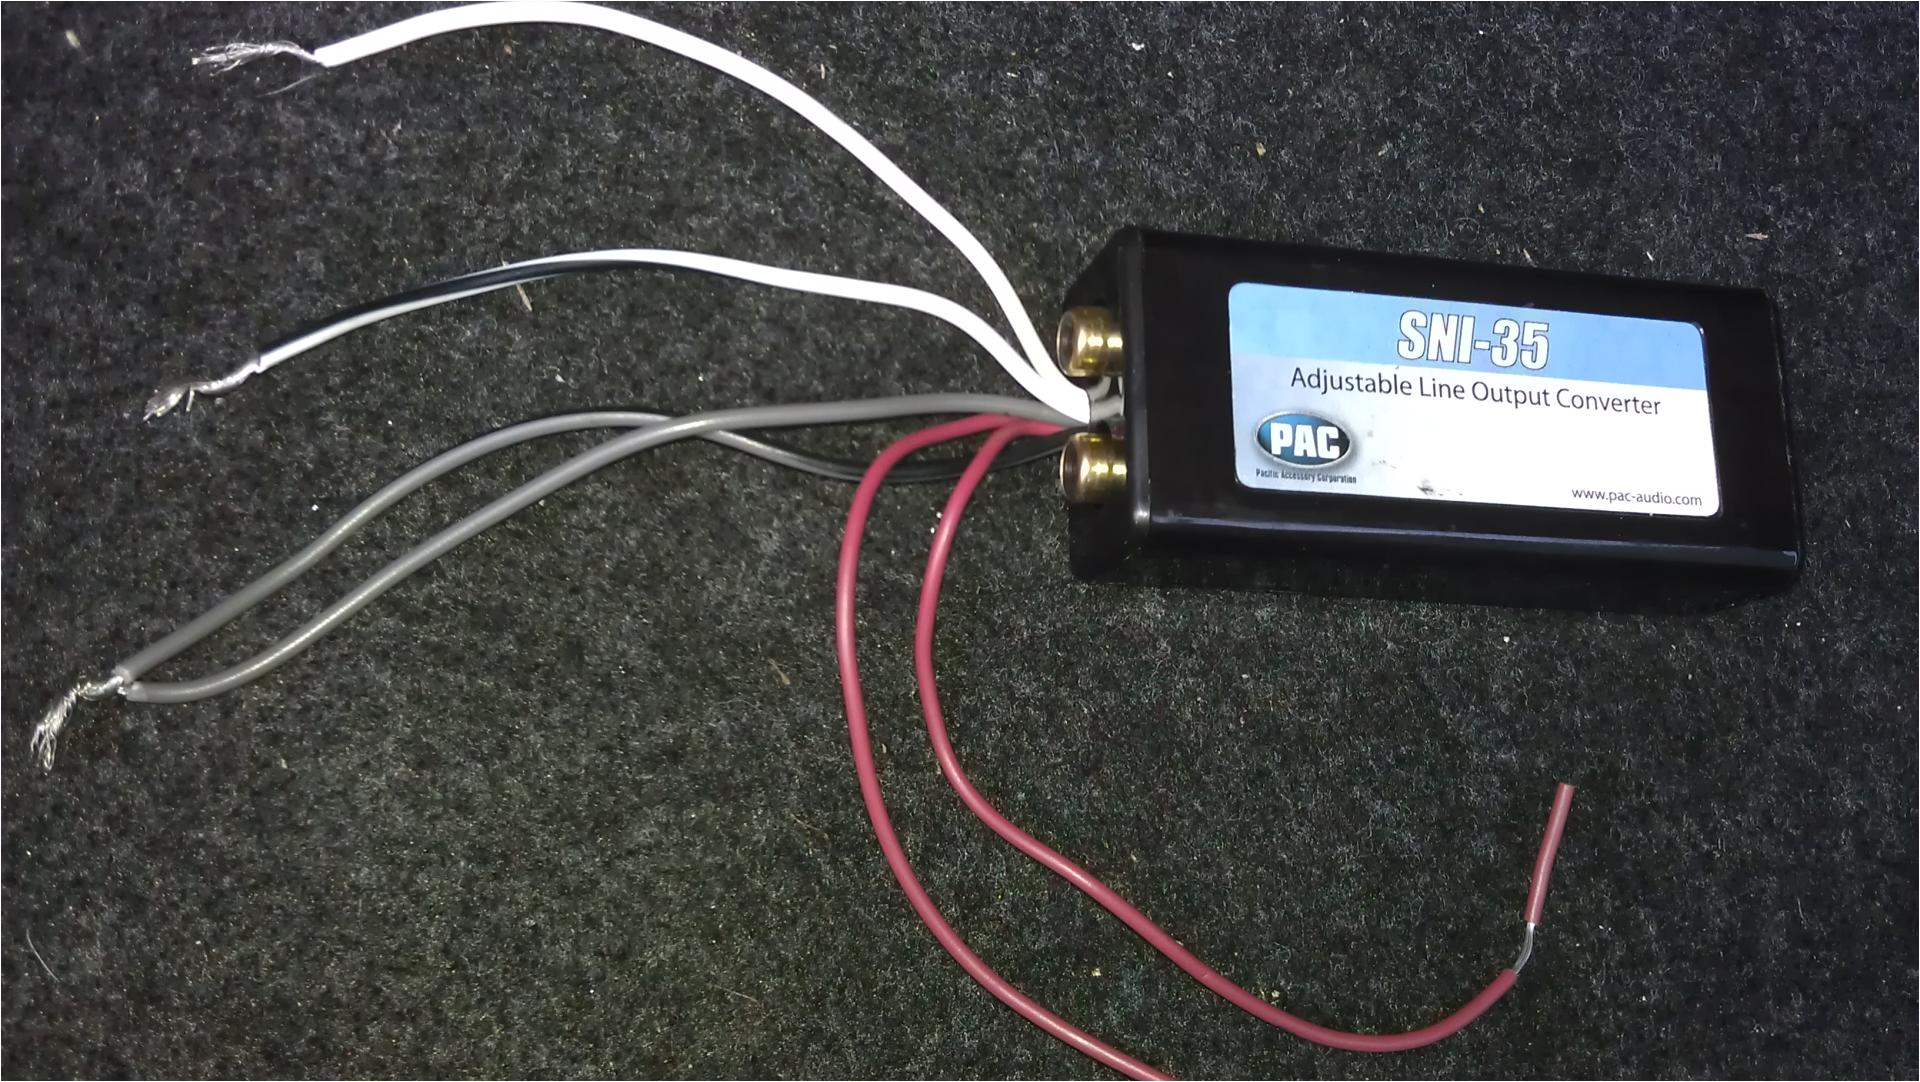 sni 35 adjustable line output converter wiring diagram wiringadjustable line output converteradjustable line output converter imag0704